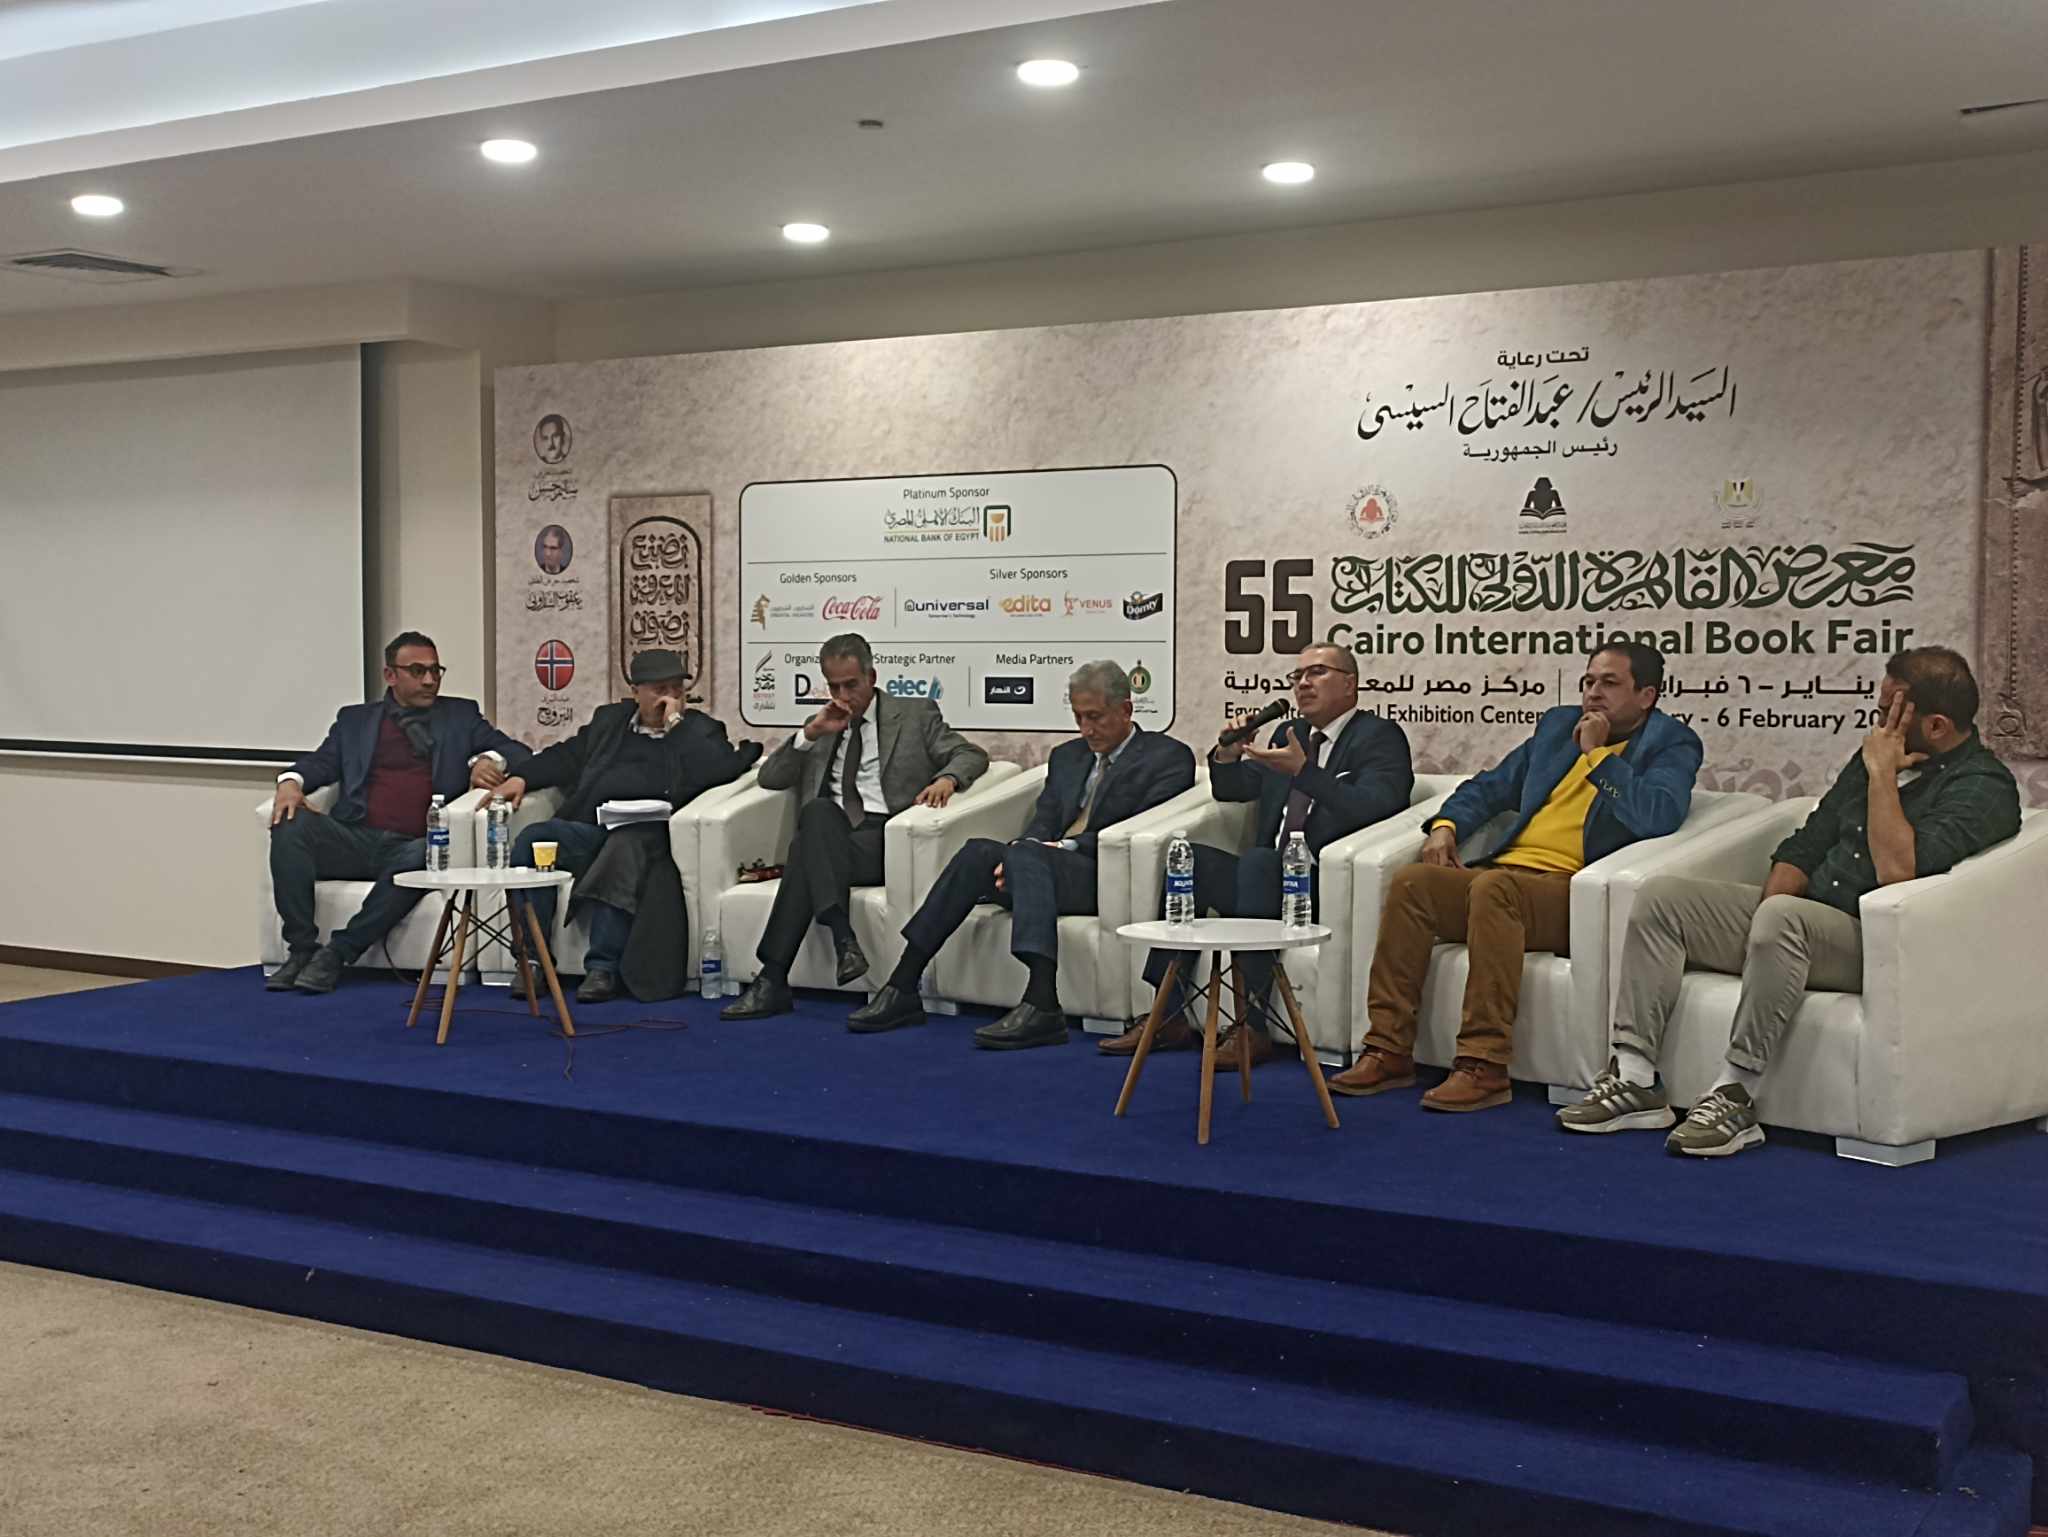  الصالون الثقافي يناقش   آفاق الرواية العربية  في فعاليات معرض الكتاب